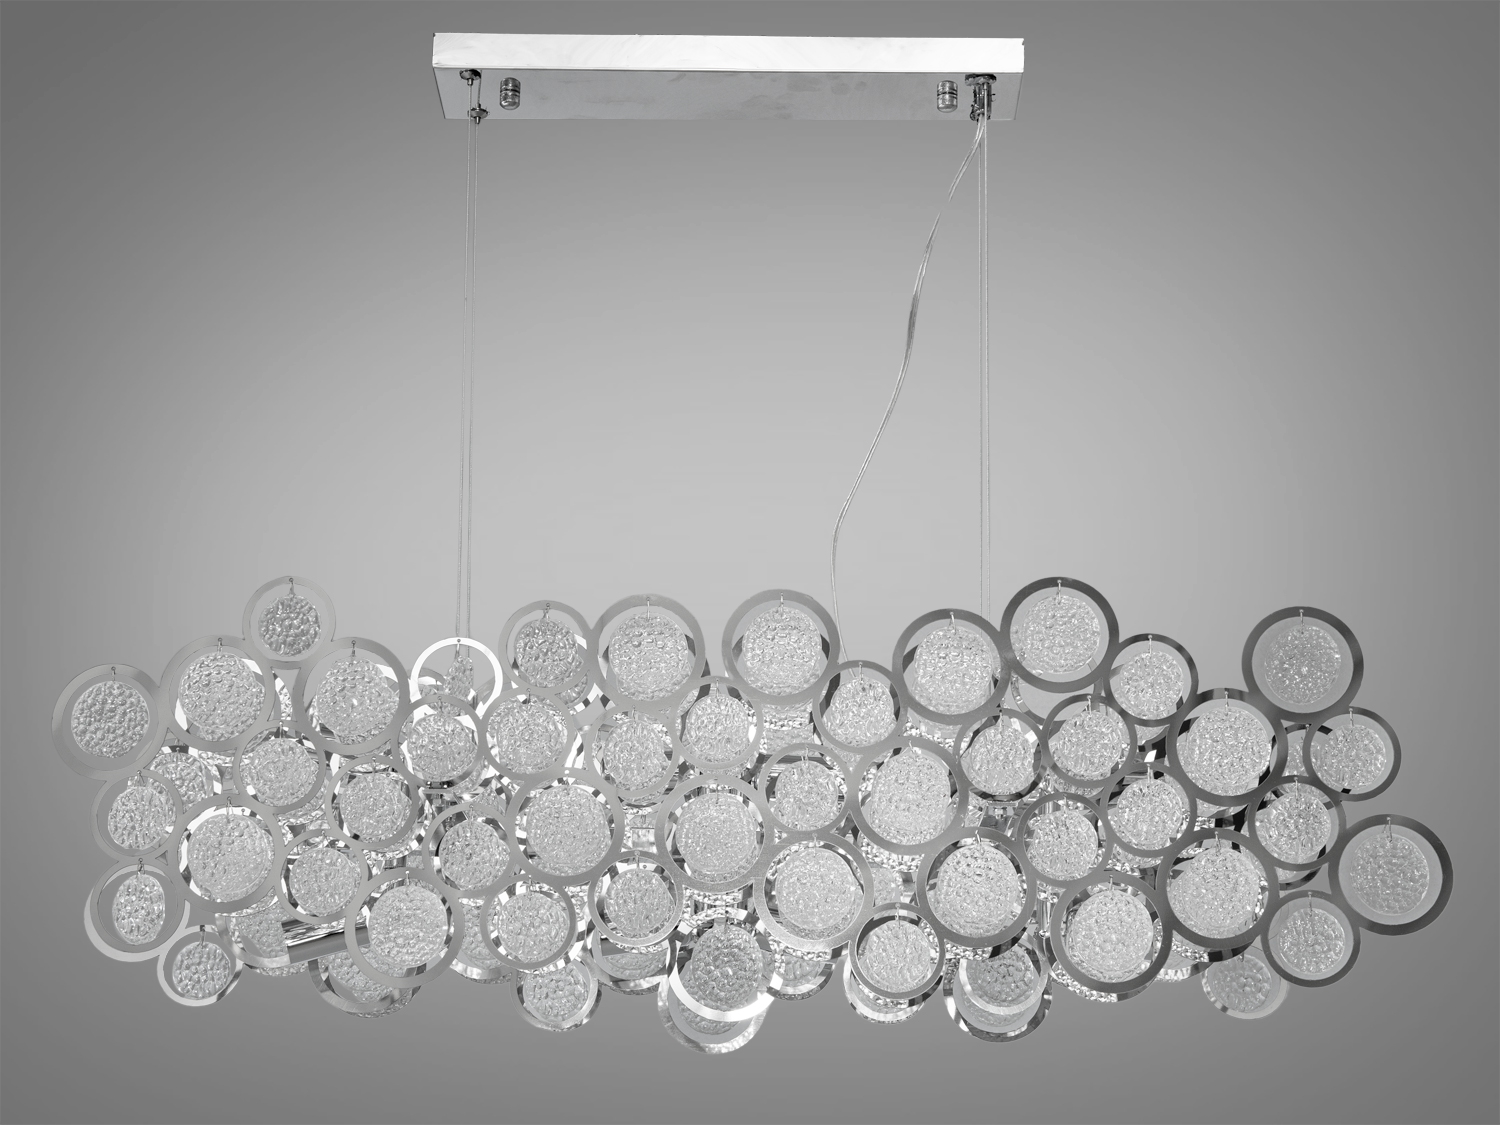 Підвісна люстра з круглими скляними елементами типу Артишок витягнутої форми, 8 ламп. Люстра додасть свіжості та лаконічності сучасному інтер`єру, де цінується функціональність і мінімалізм.